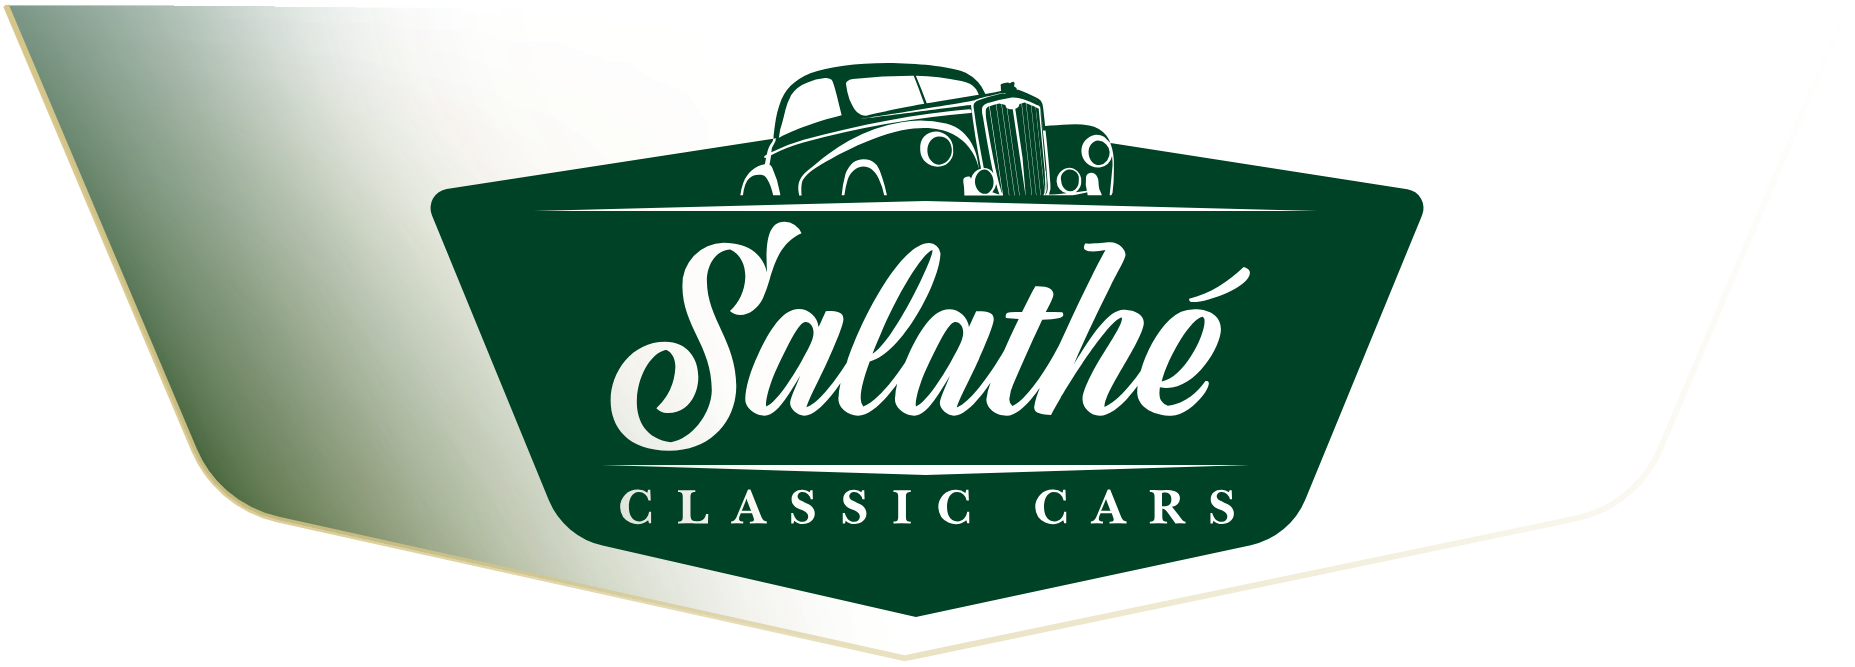 Salathé Classic Cars